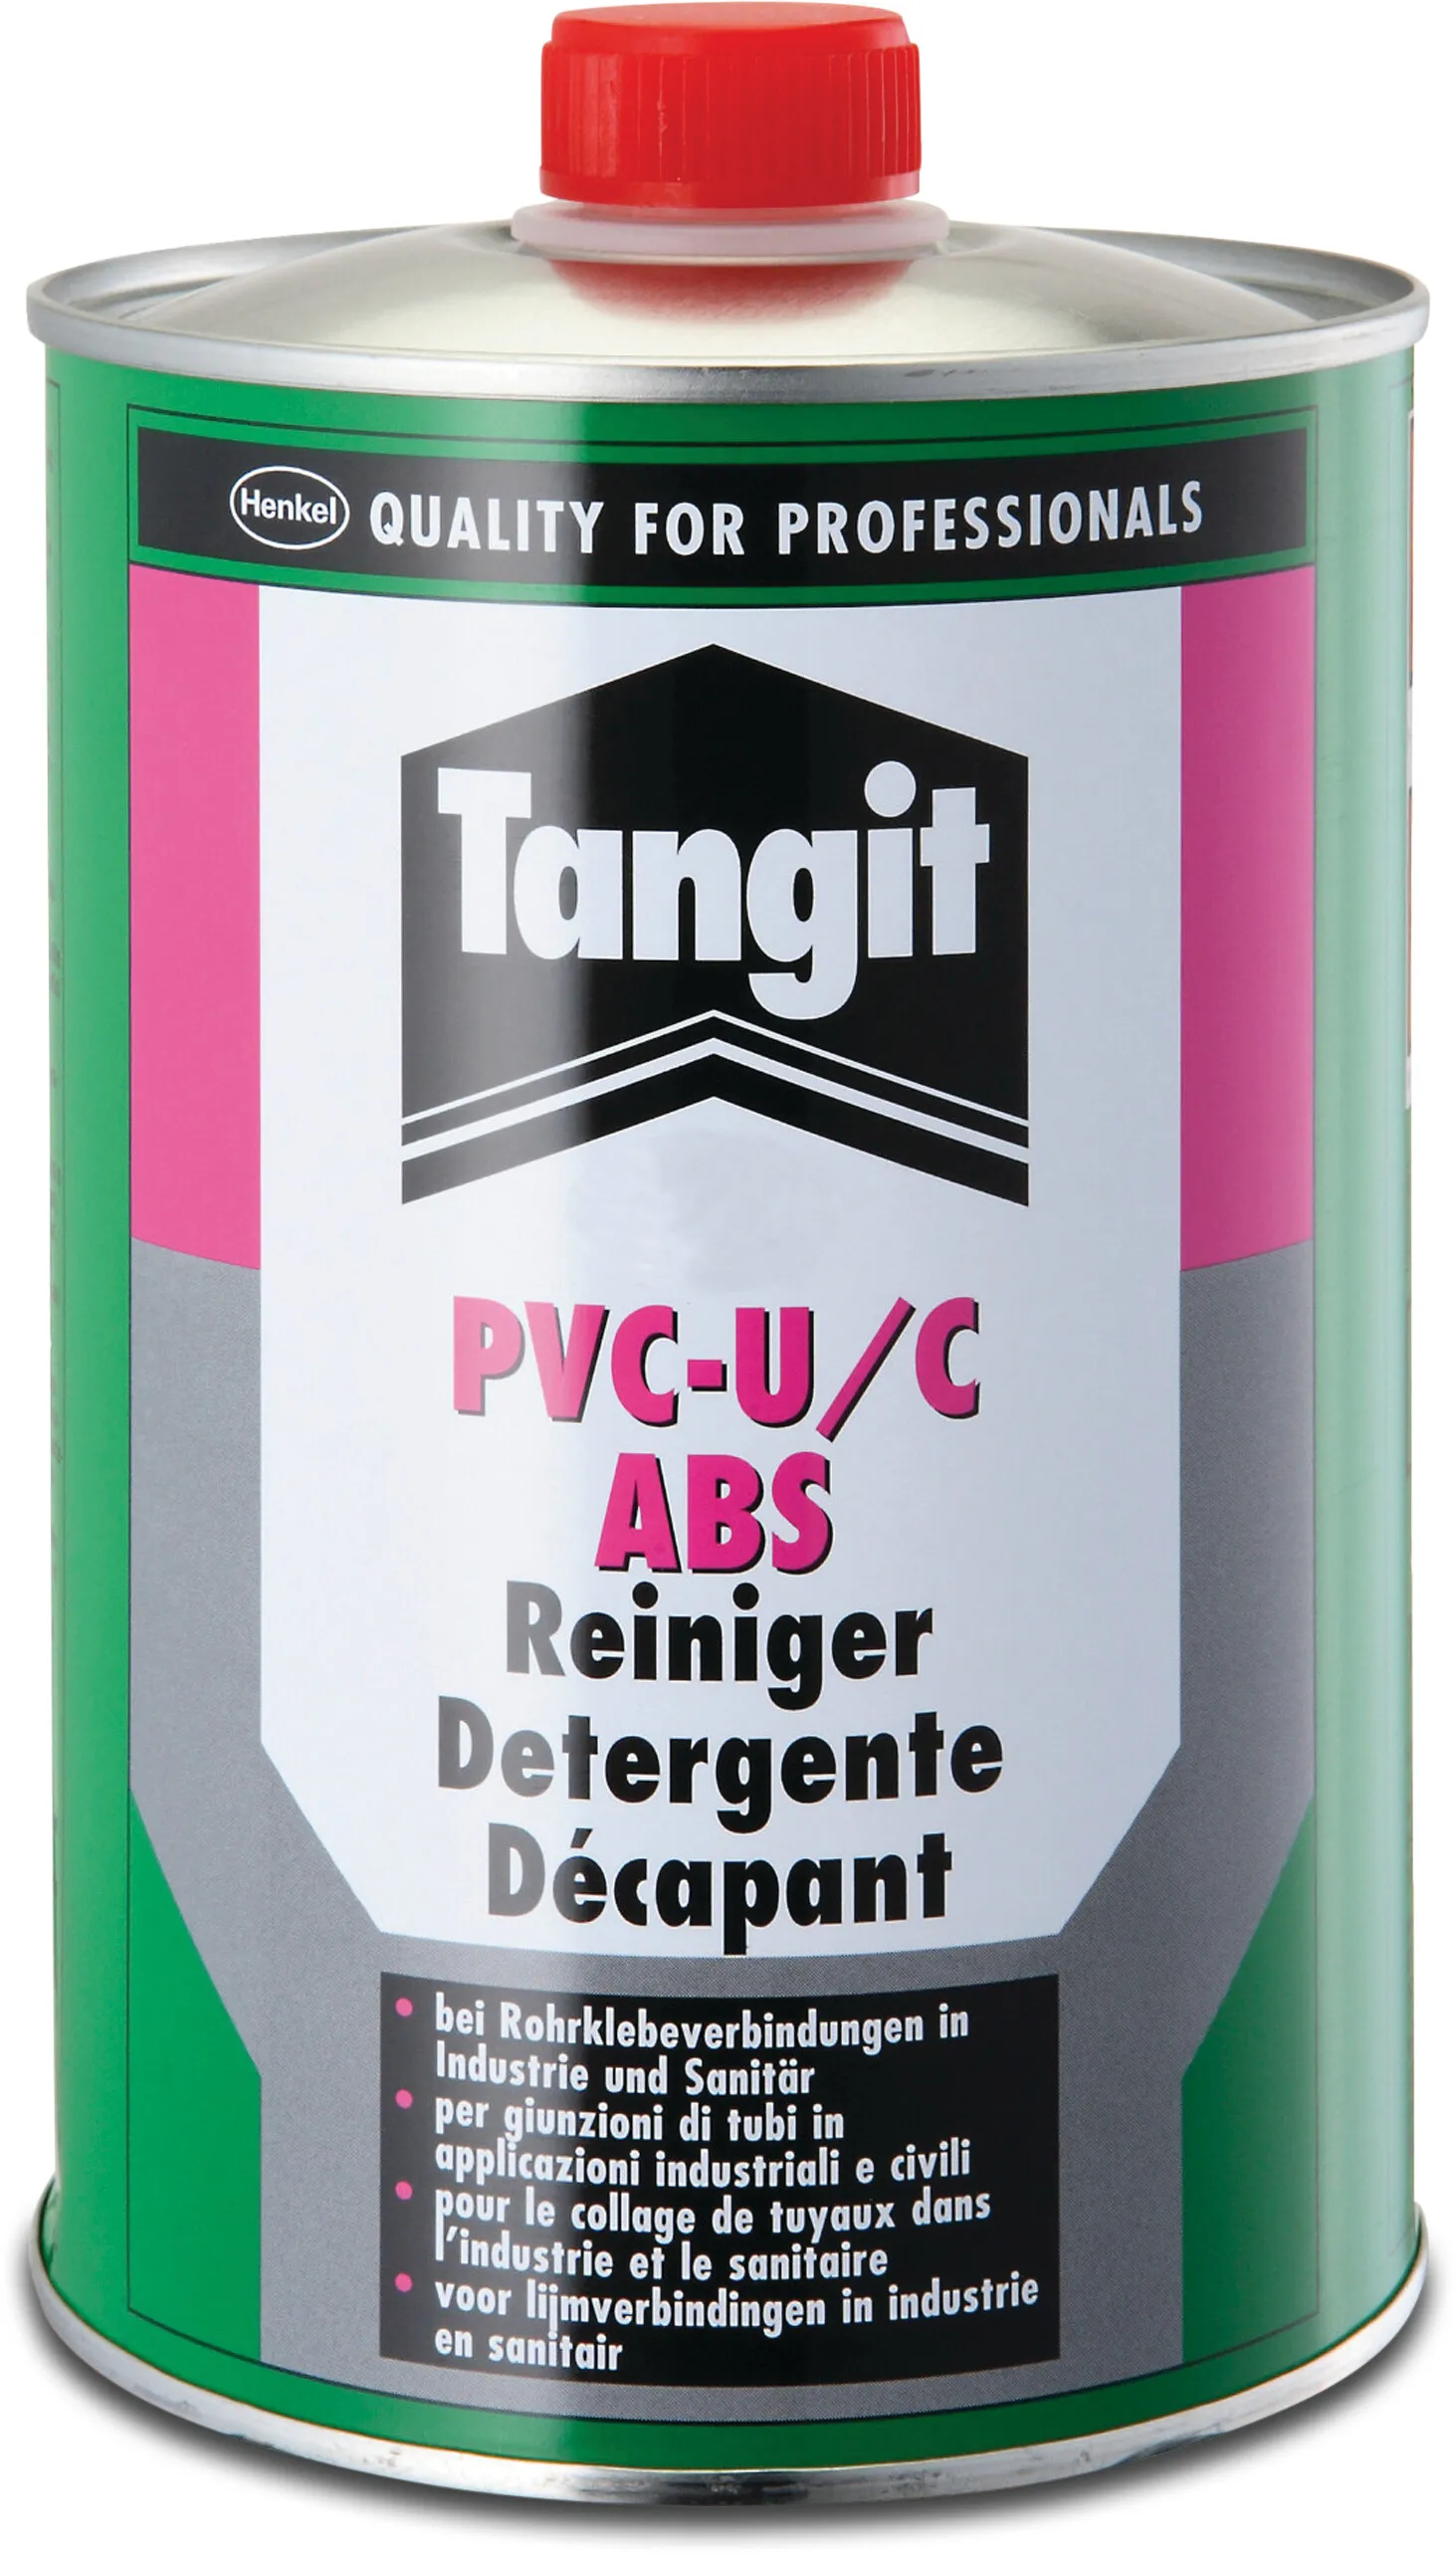 Tangit Nettoyant à base de solvant 1ltr type PVC-U/C ABS label EN/DE/NL/FR/IT